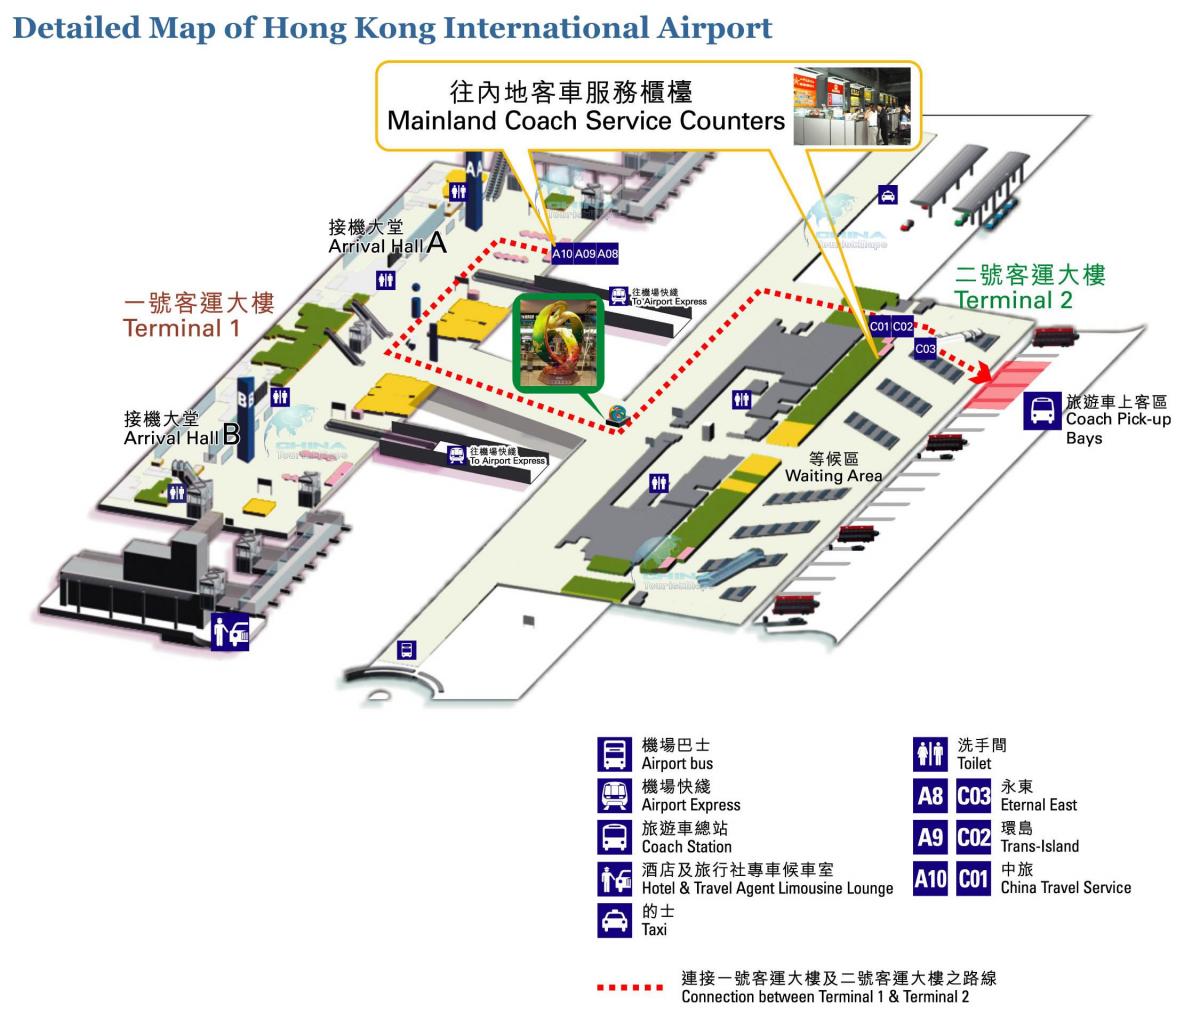 zemljevid Hong Kong letališče